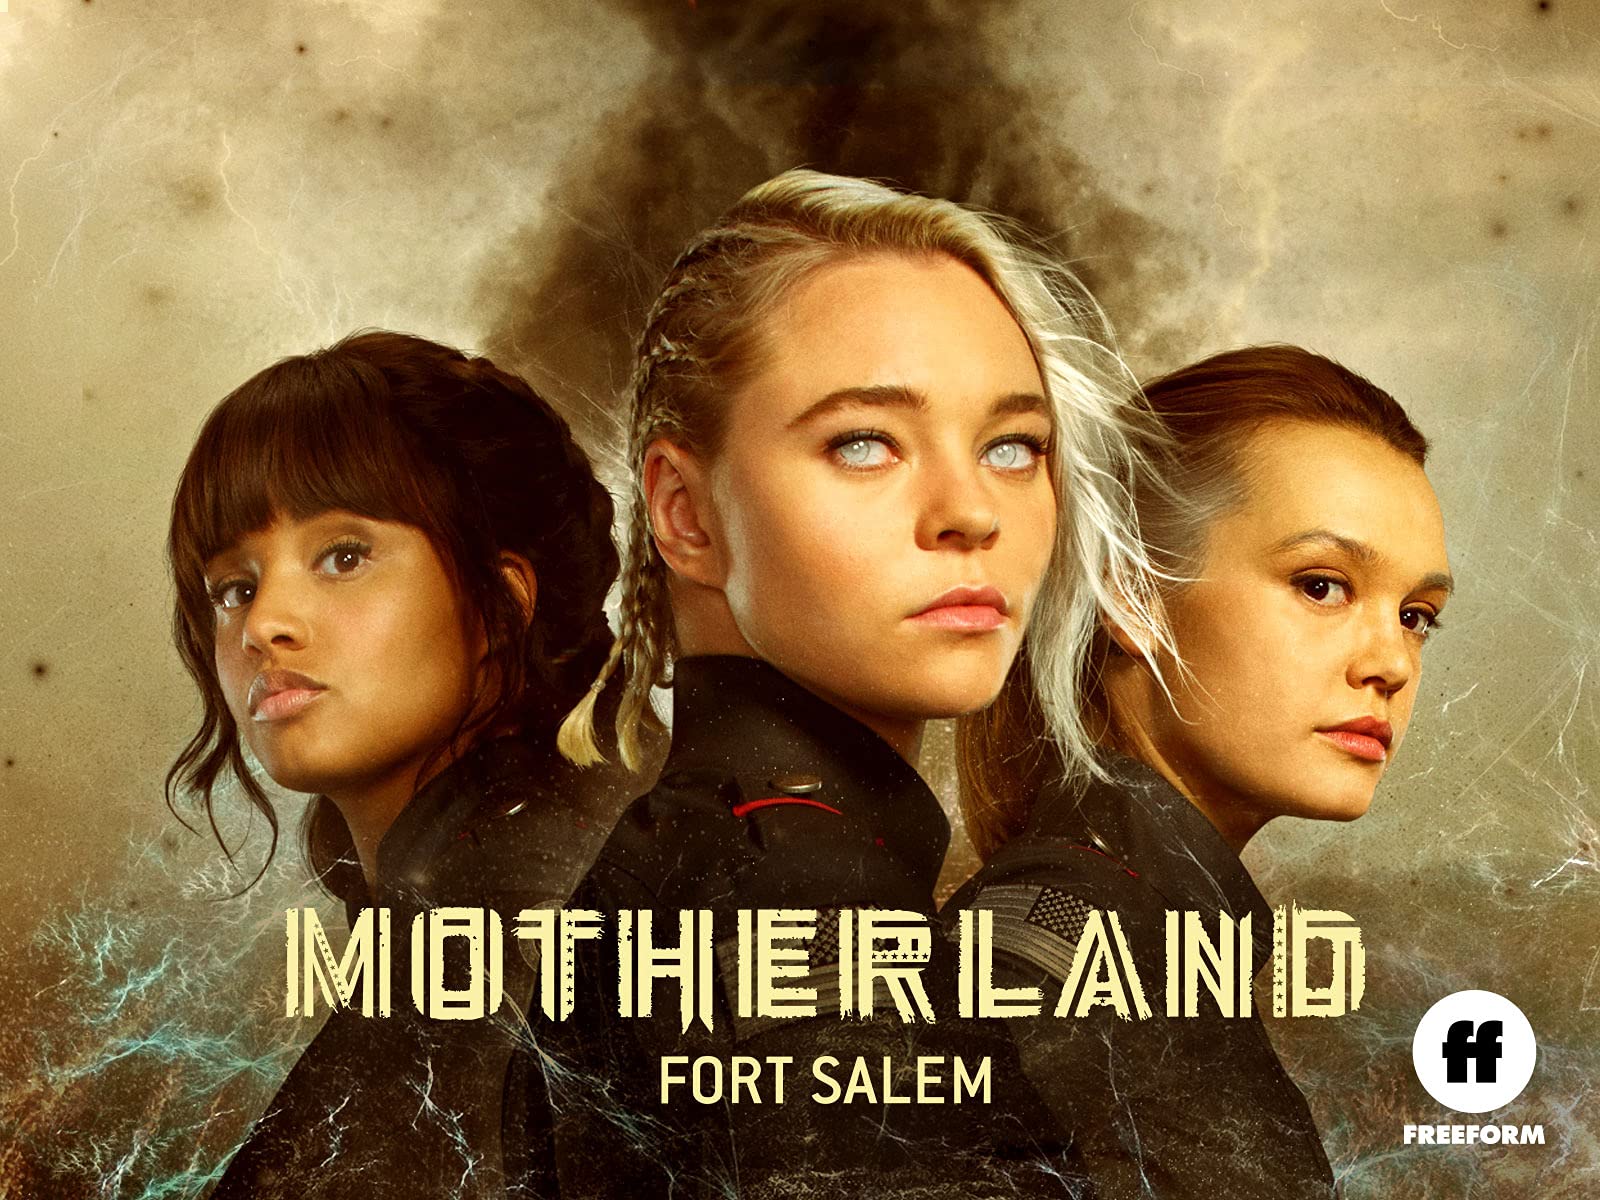 Motherland: Fort Salem Wallpapers